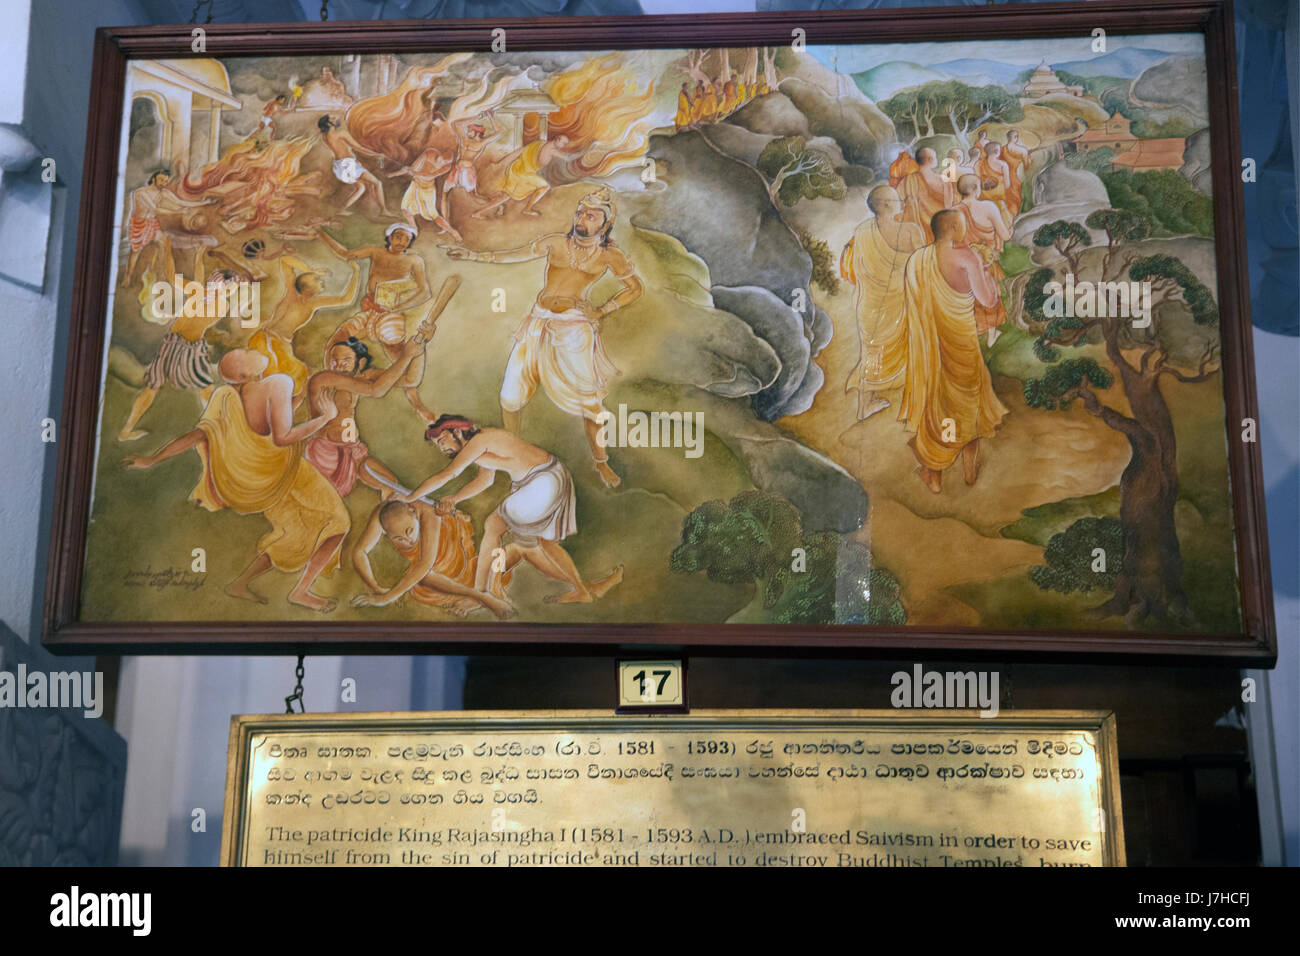 Kandy-Sri Lanka-Tempel Sri Dalada Museum Gemälde von der Geschichte von The Zahn Zahntempel - Vatermord König Rajasingha ich (1581-1593 n. Chr.) umarmt Saivism um sich von der Sünde der Vatermord zu retten und fing an buddhistischen Tempeln zu zerstören Stockfoto